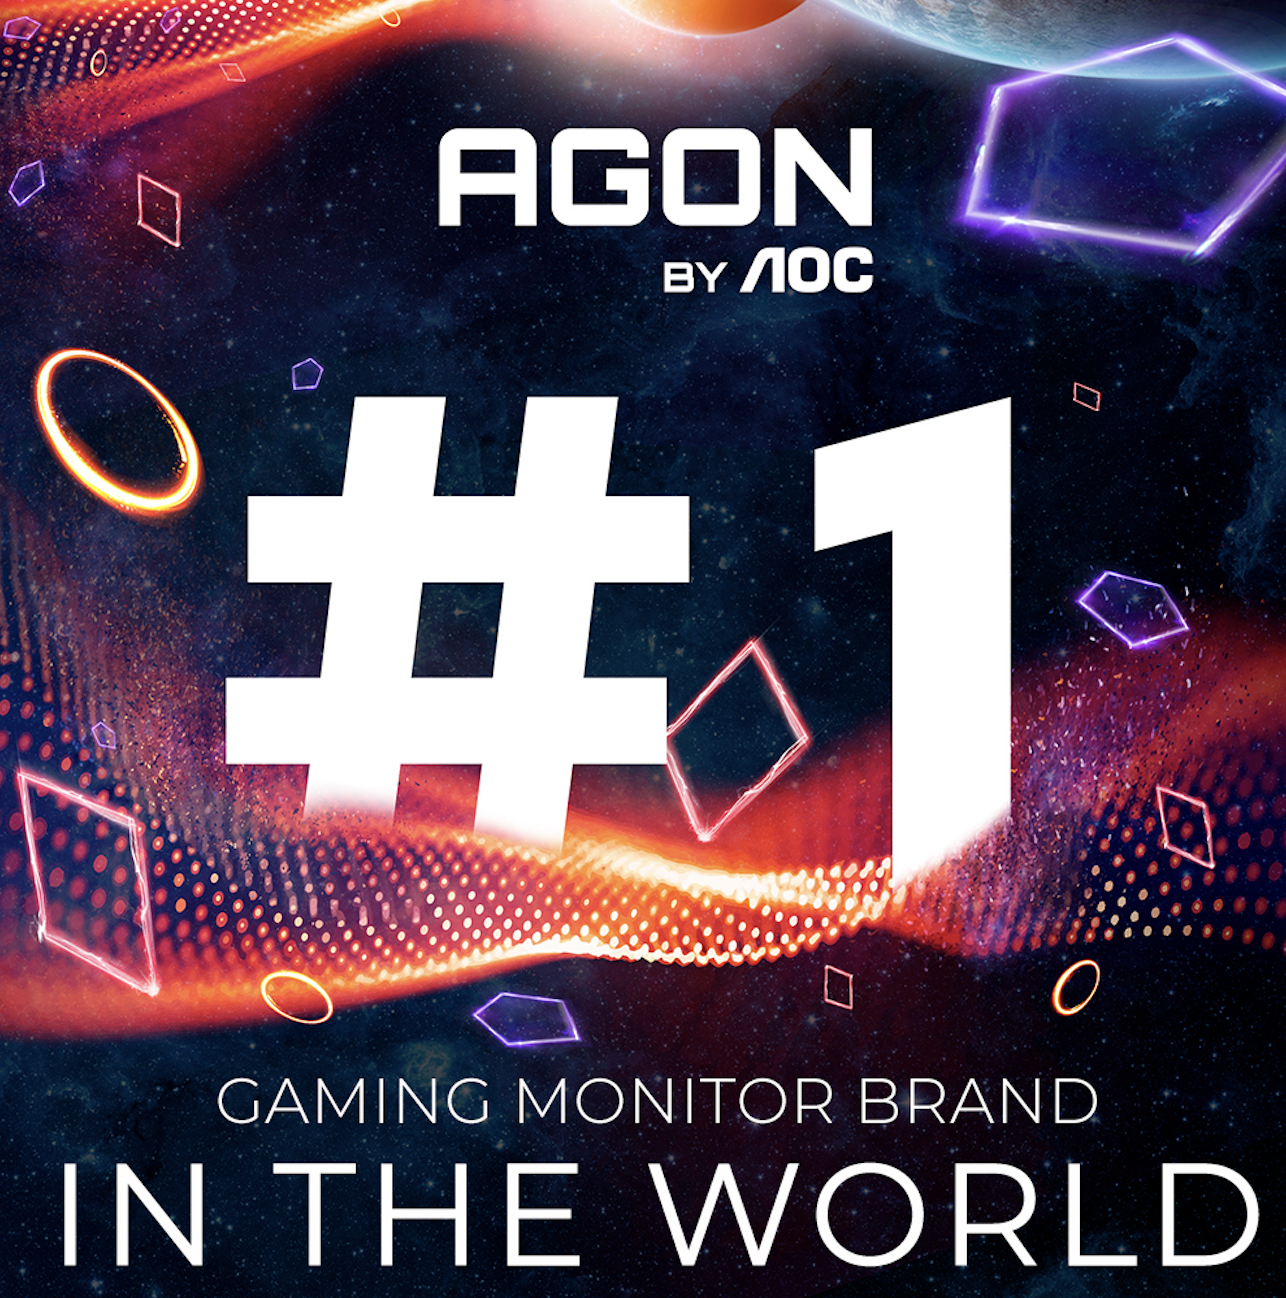 AGON by AOC op 1 als 's werelds toonaangevende gaming-monitor-merk